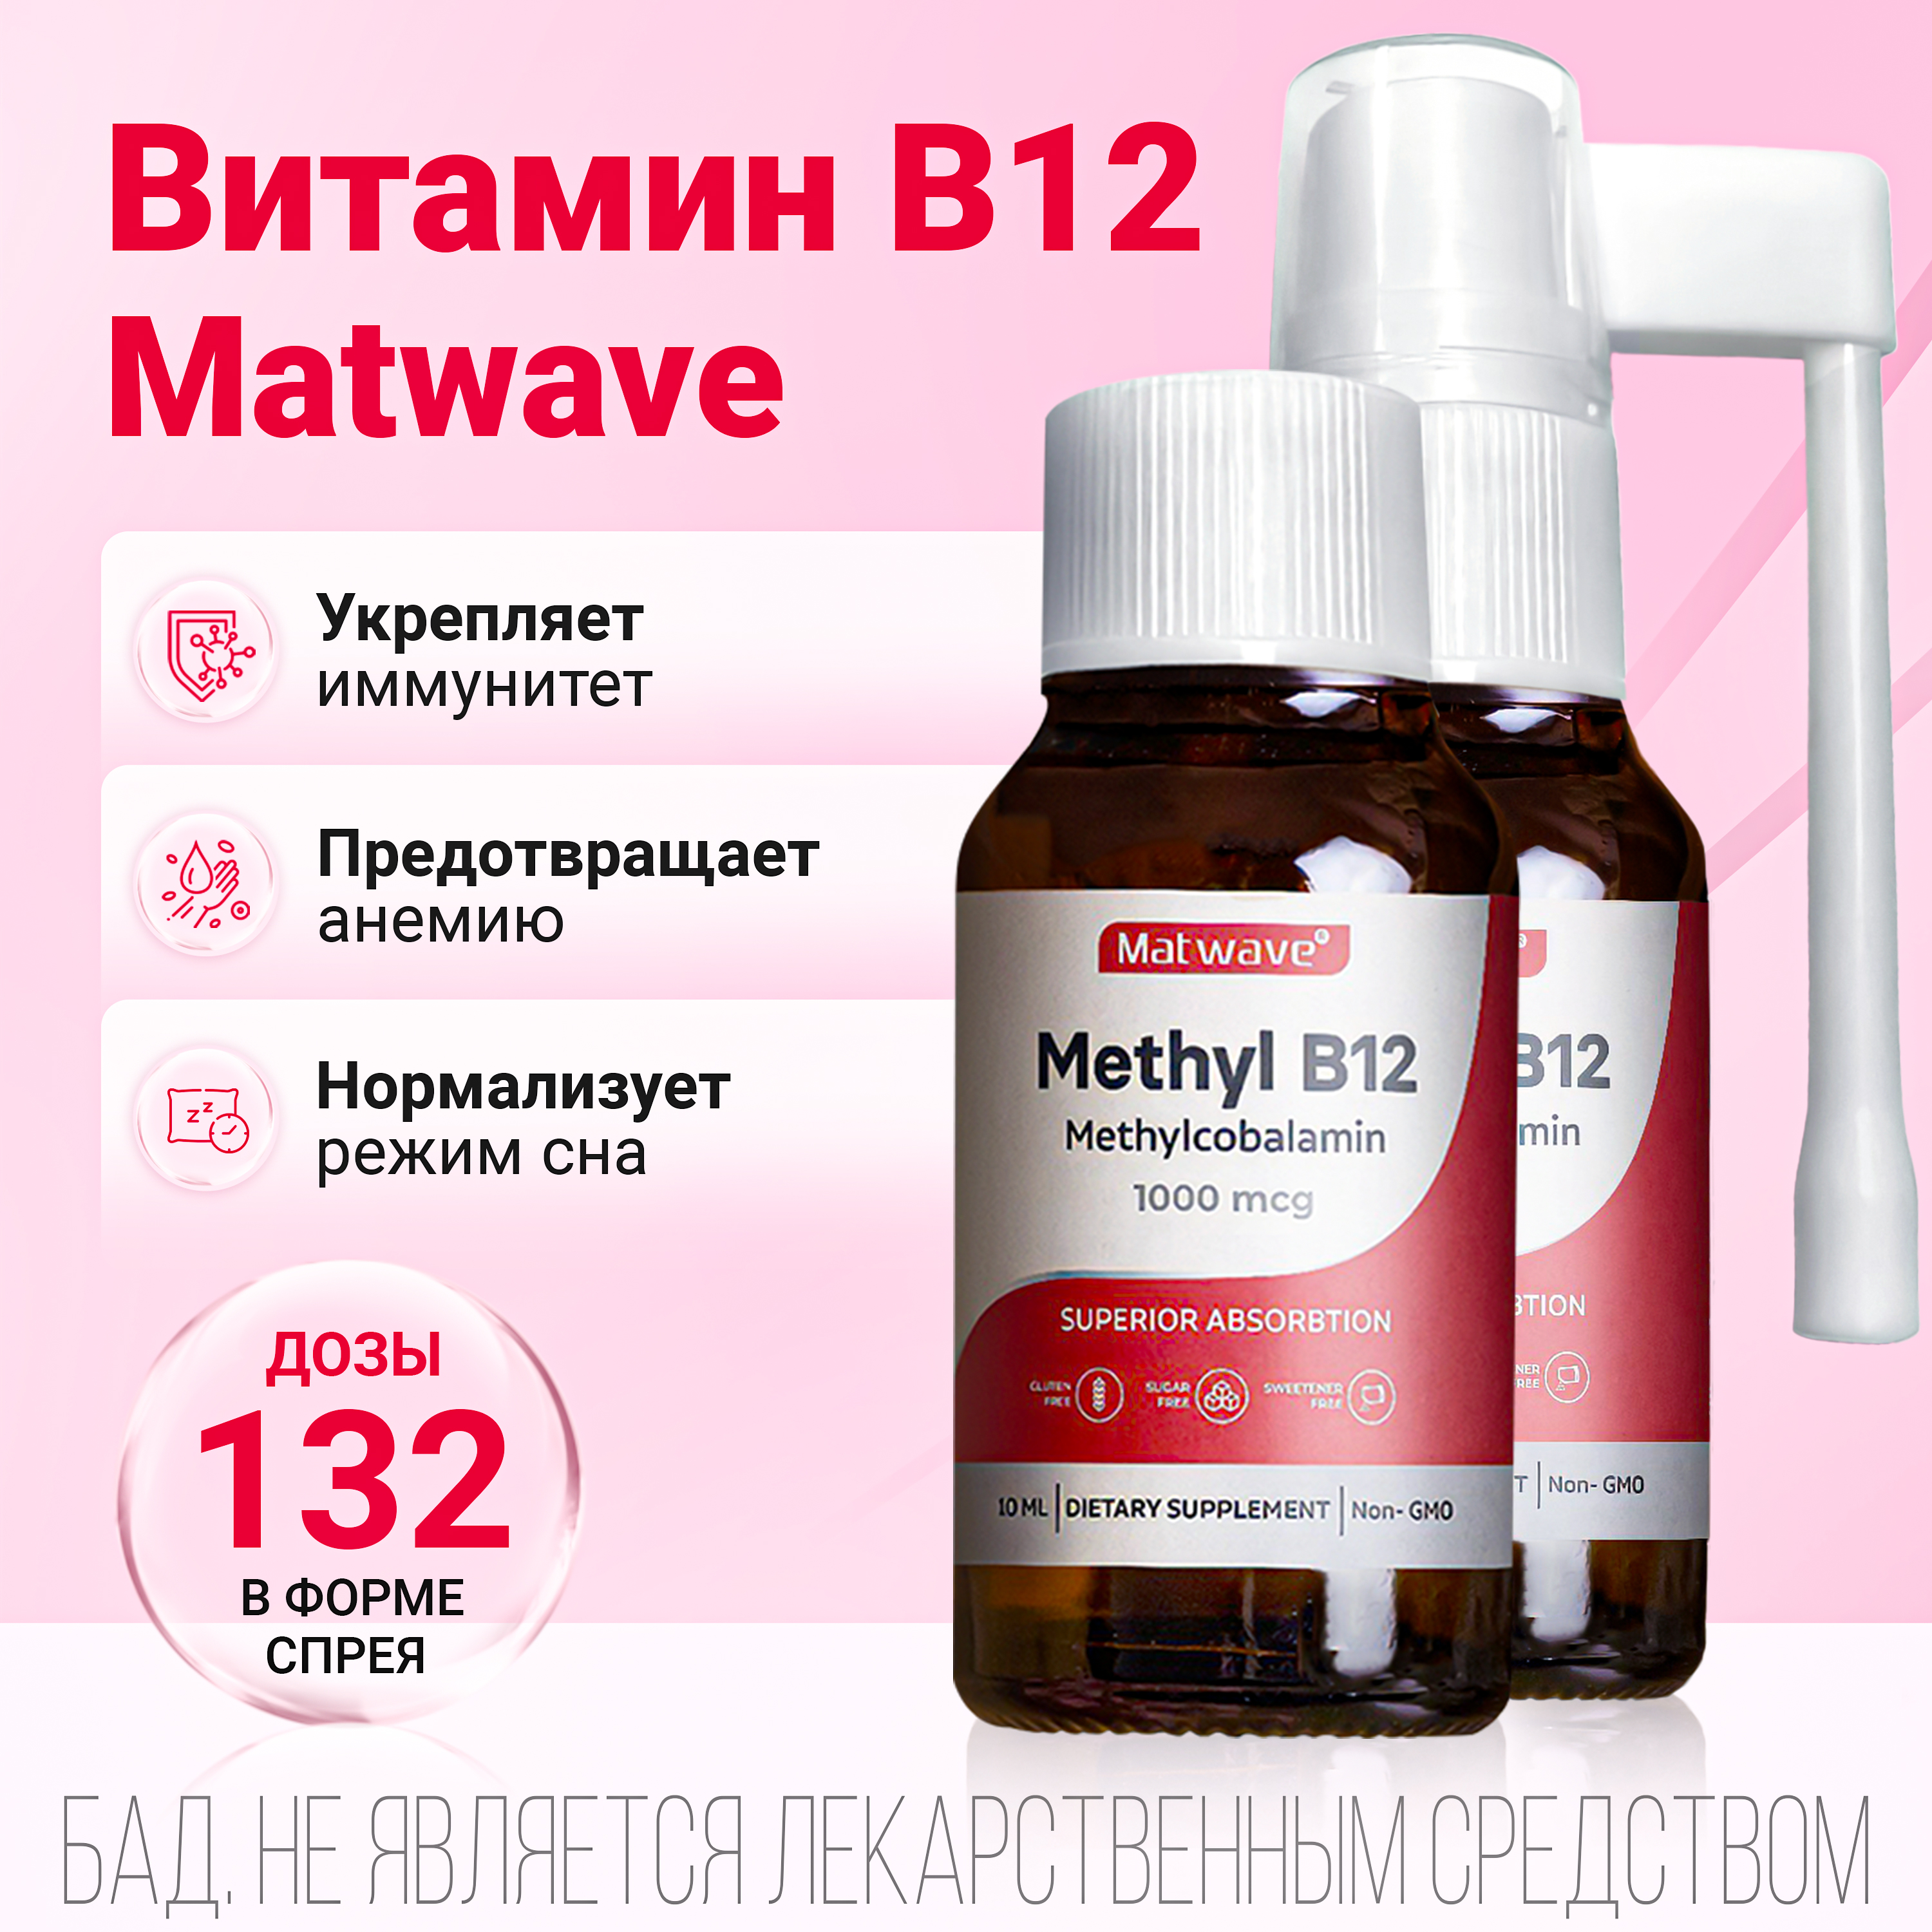 Витамин B12 Matwave Метил B-12, спрей, 10 мл, 2 упаковки